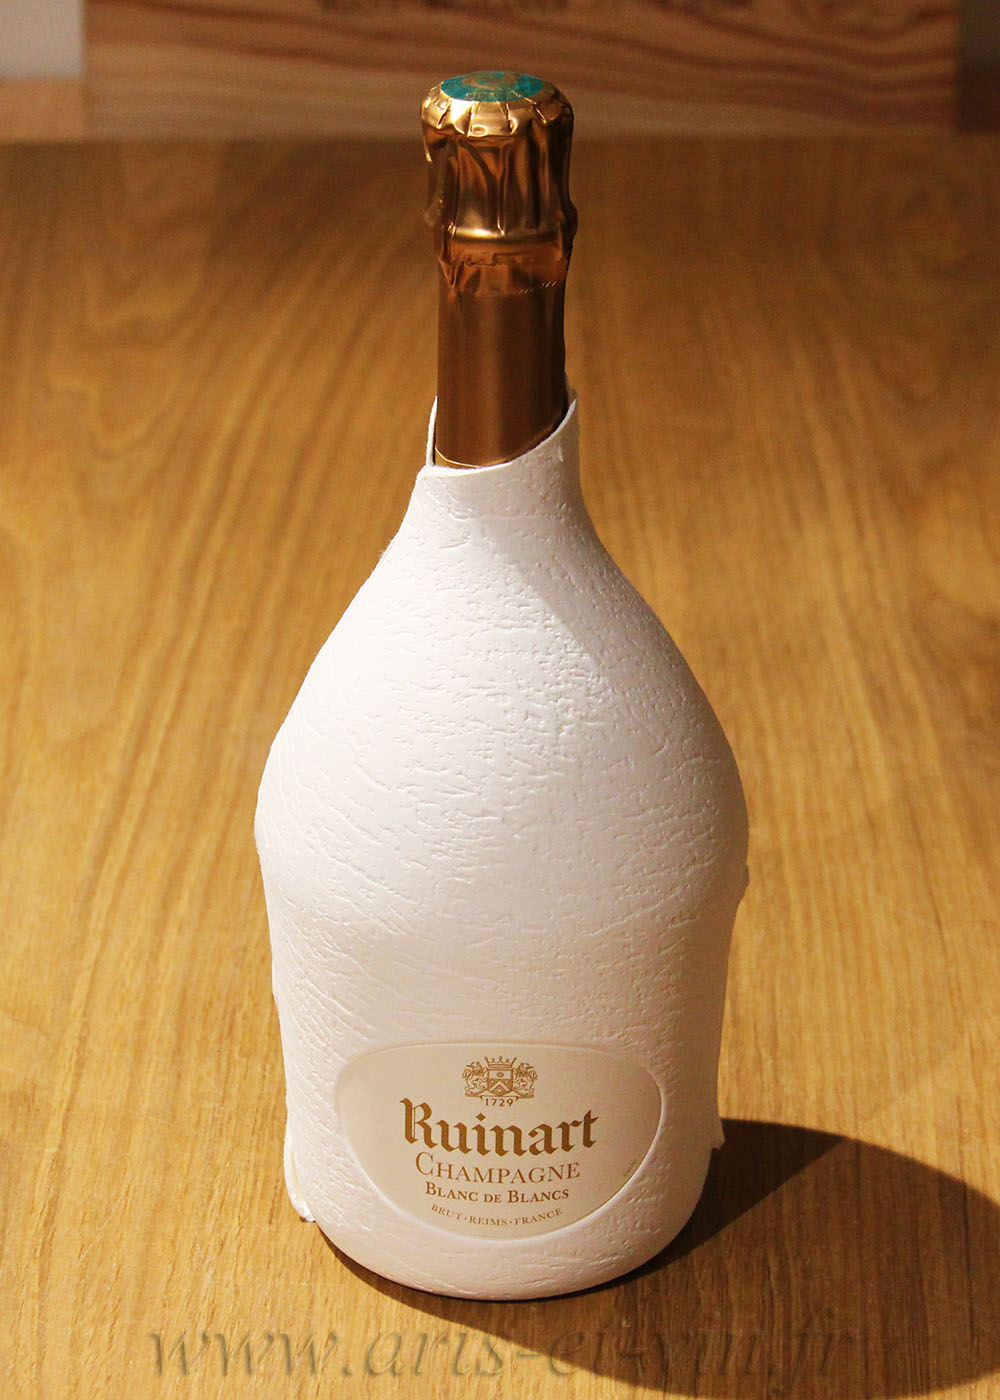 Champagne Ruinart Blanc de Blancs Seconde peau - Le Clos Privé